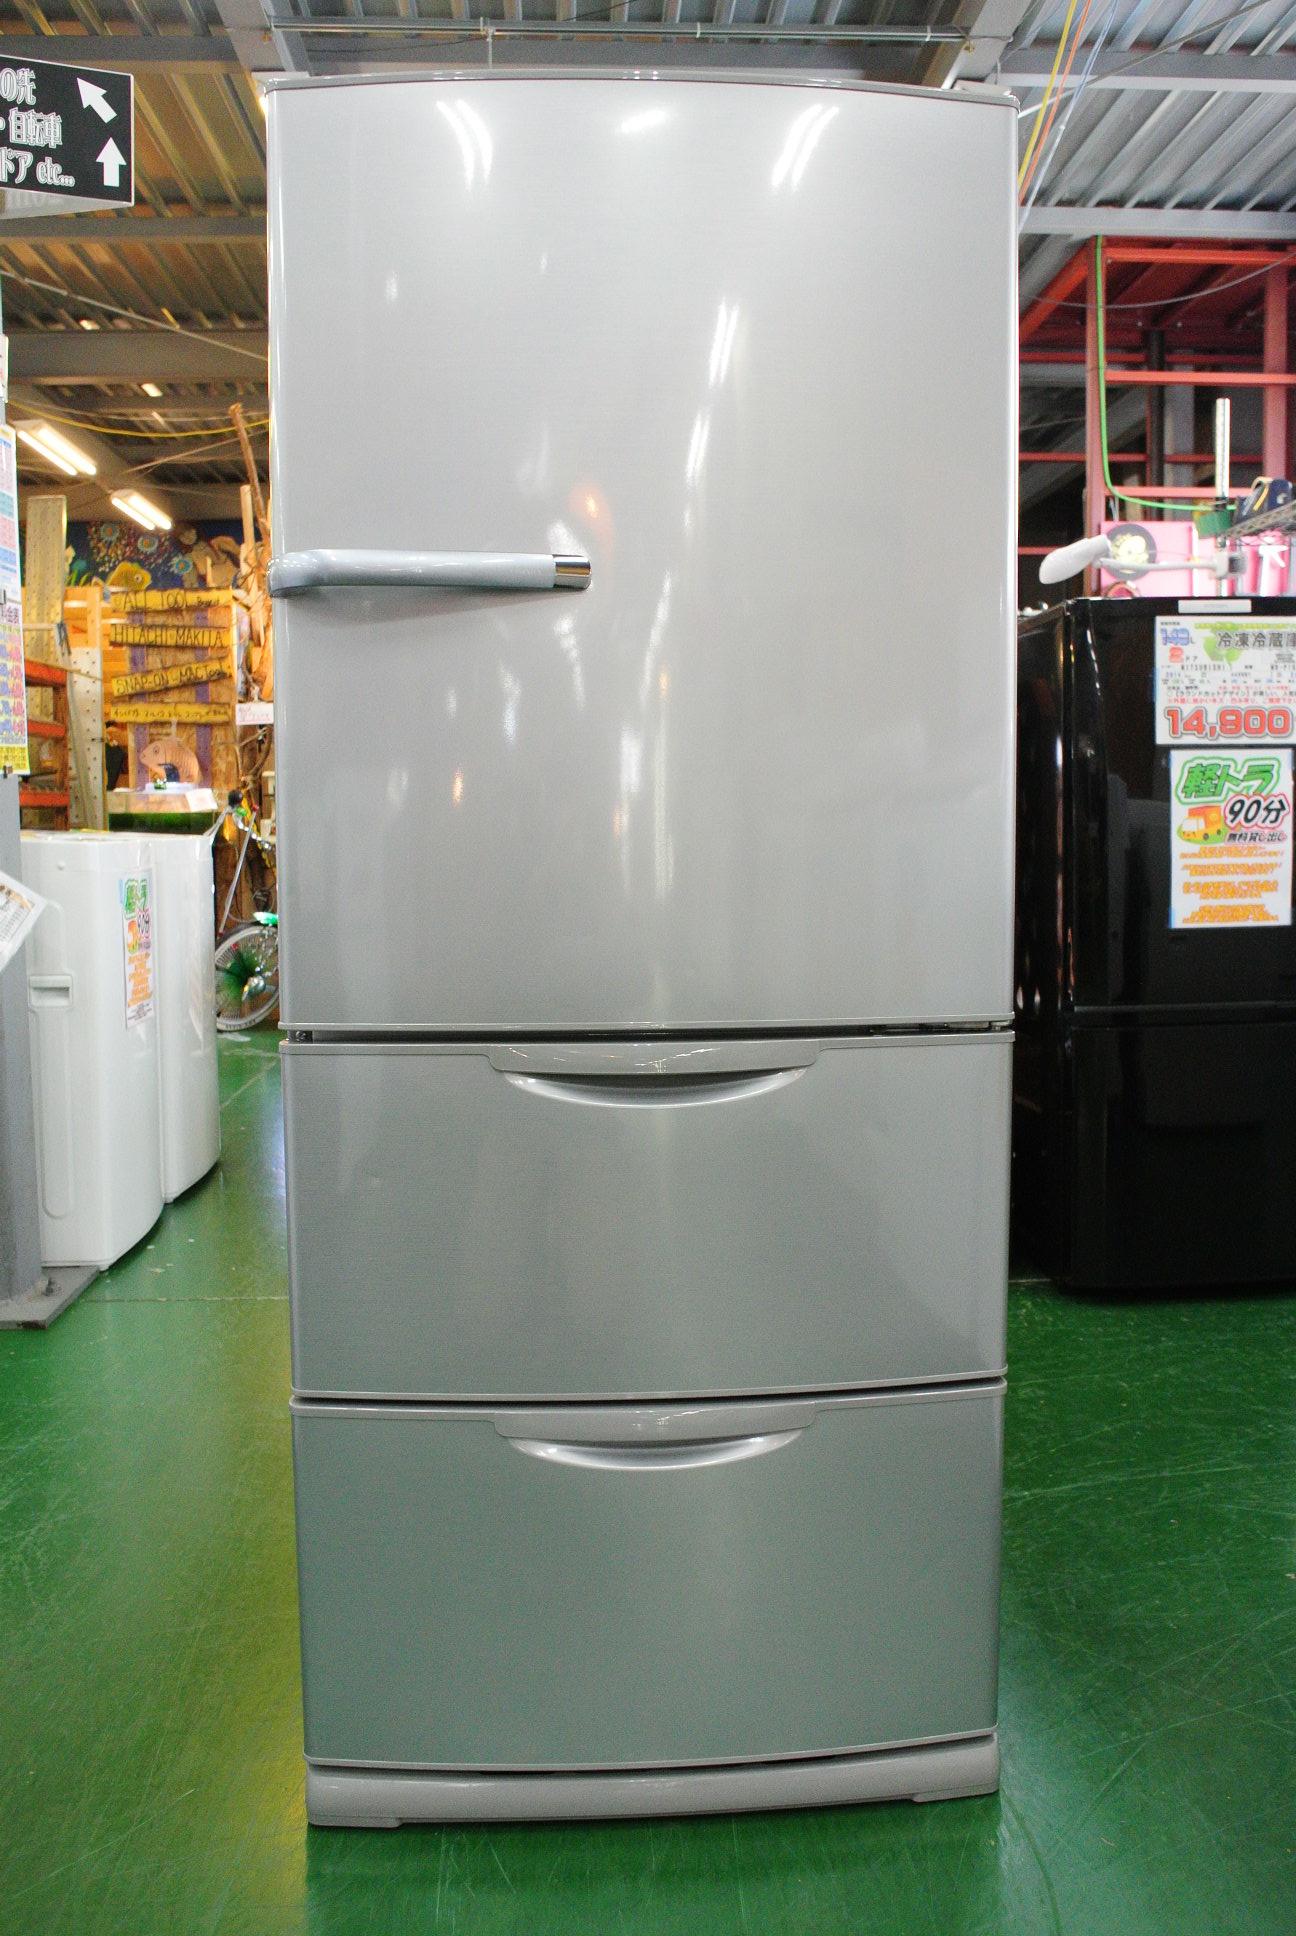 AQUA アクア 272L 3ドア冷蔵庫 AQR-271D 2015年製。清掃済みの冷蔵庫を